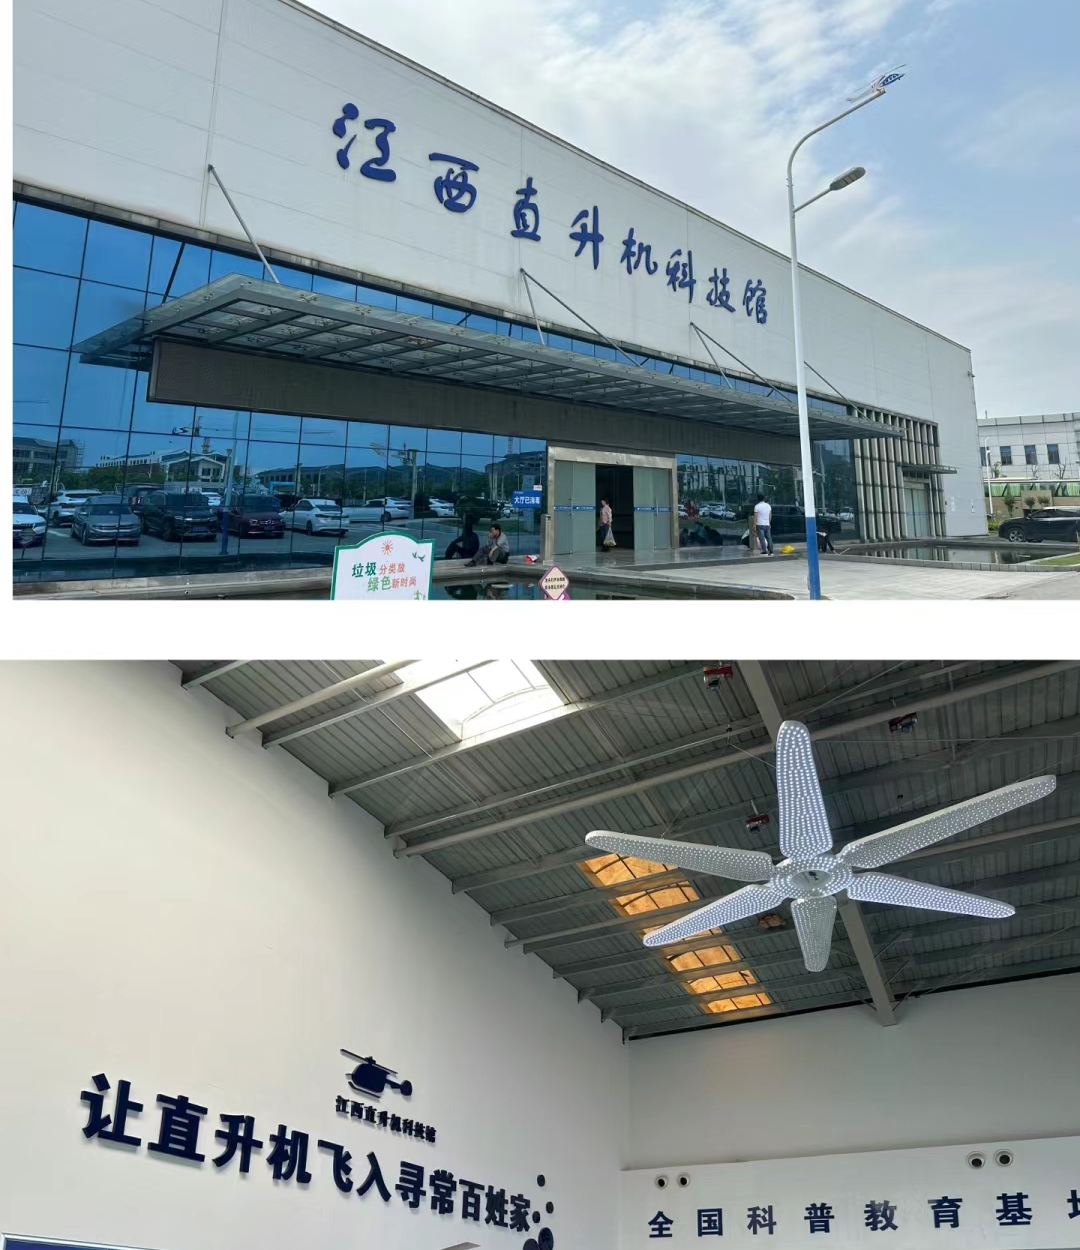 景德镇直升机科技馆（原景德镇直升飞机博物馆）是中国首个以直升机为主题的专业博物馆，位于江西省景德镇市